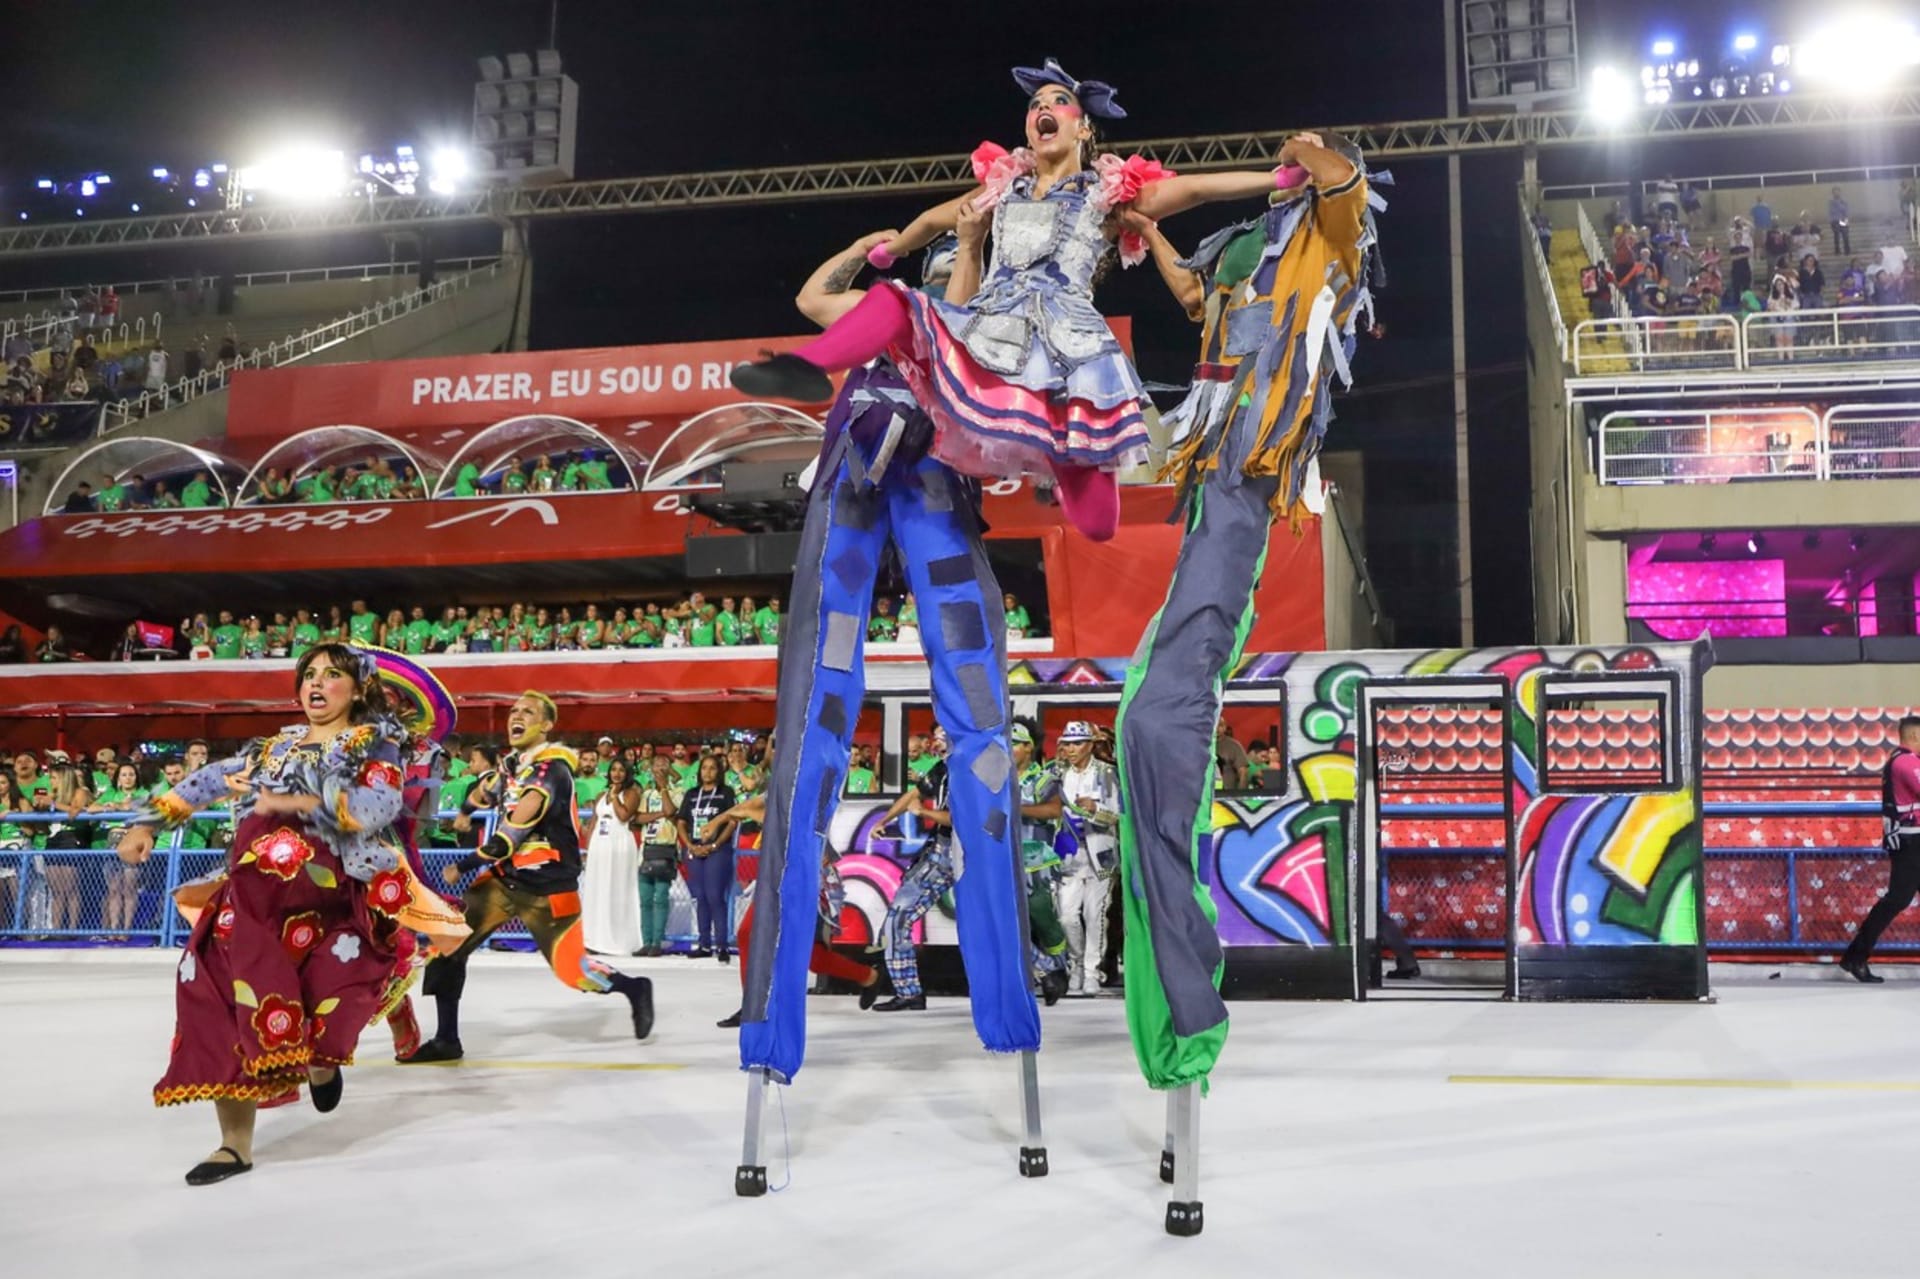 Ke karnevalovým vystoupením v brazilském Riu de Janeiru patří také postavy na chůdách. Na snímku jsou členové uskupení Em Cima da Hora.